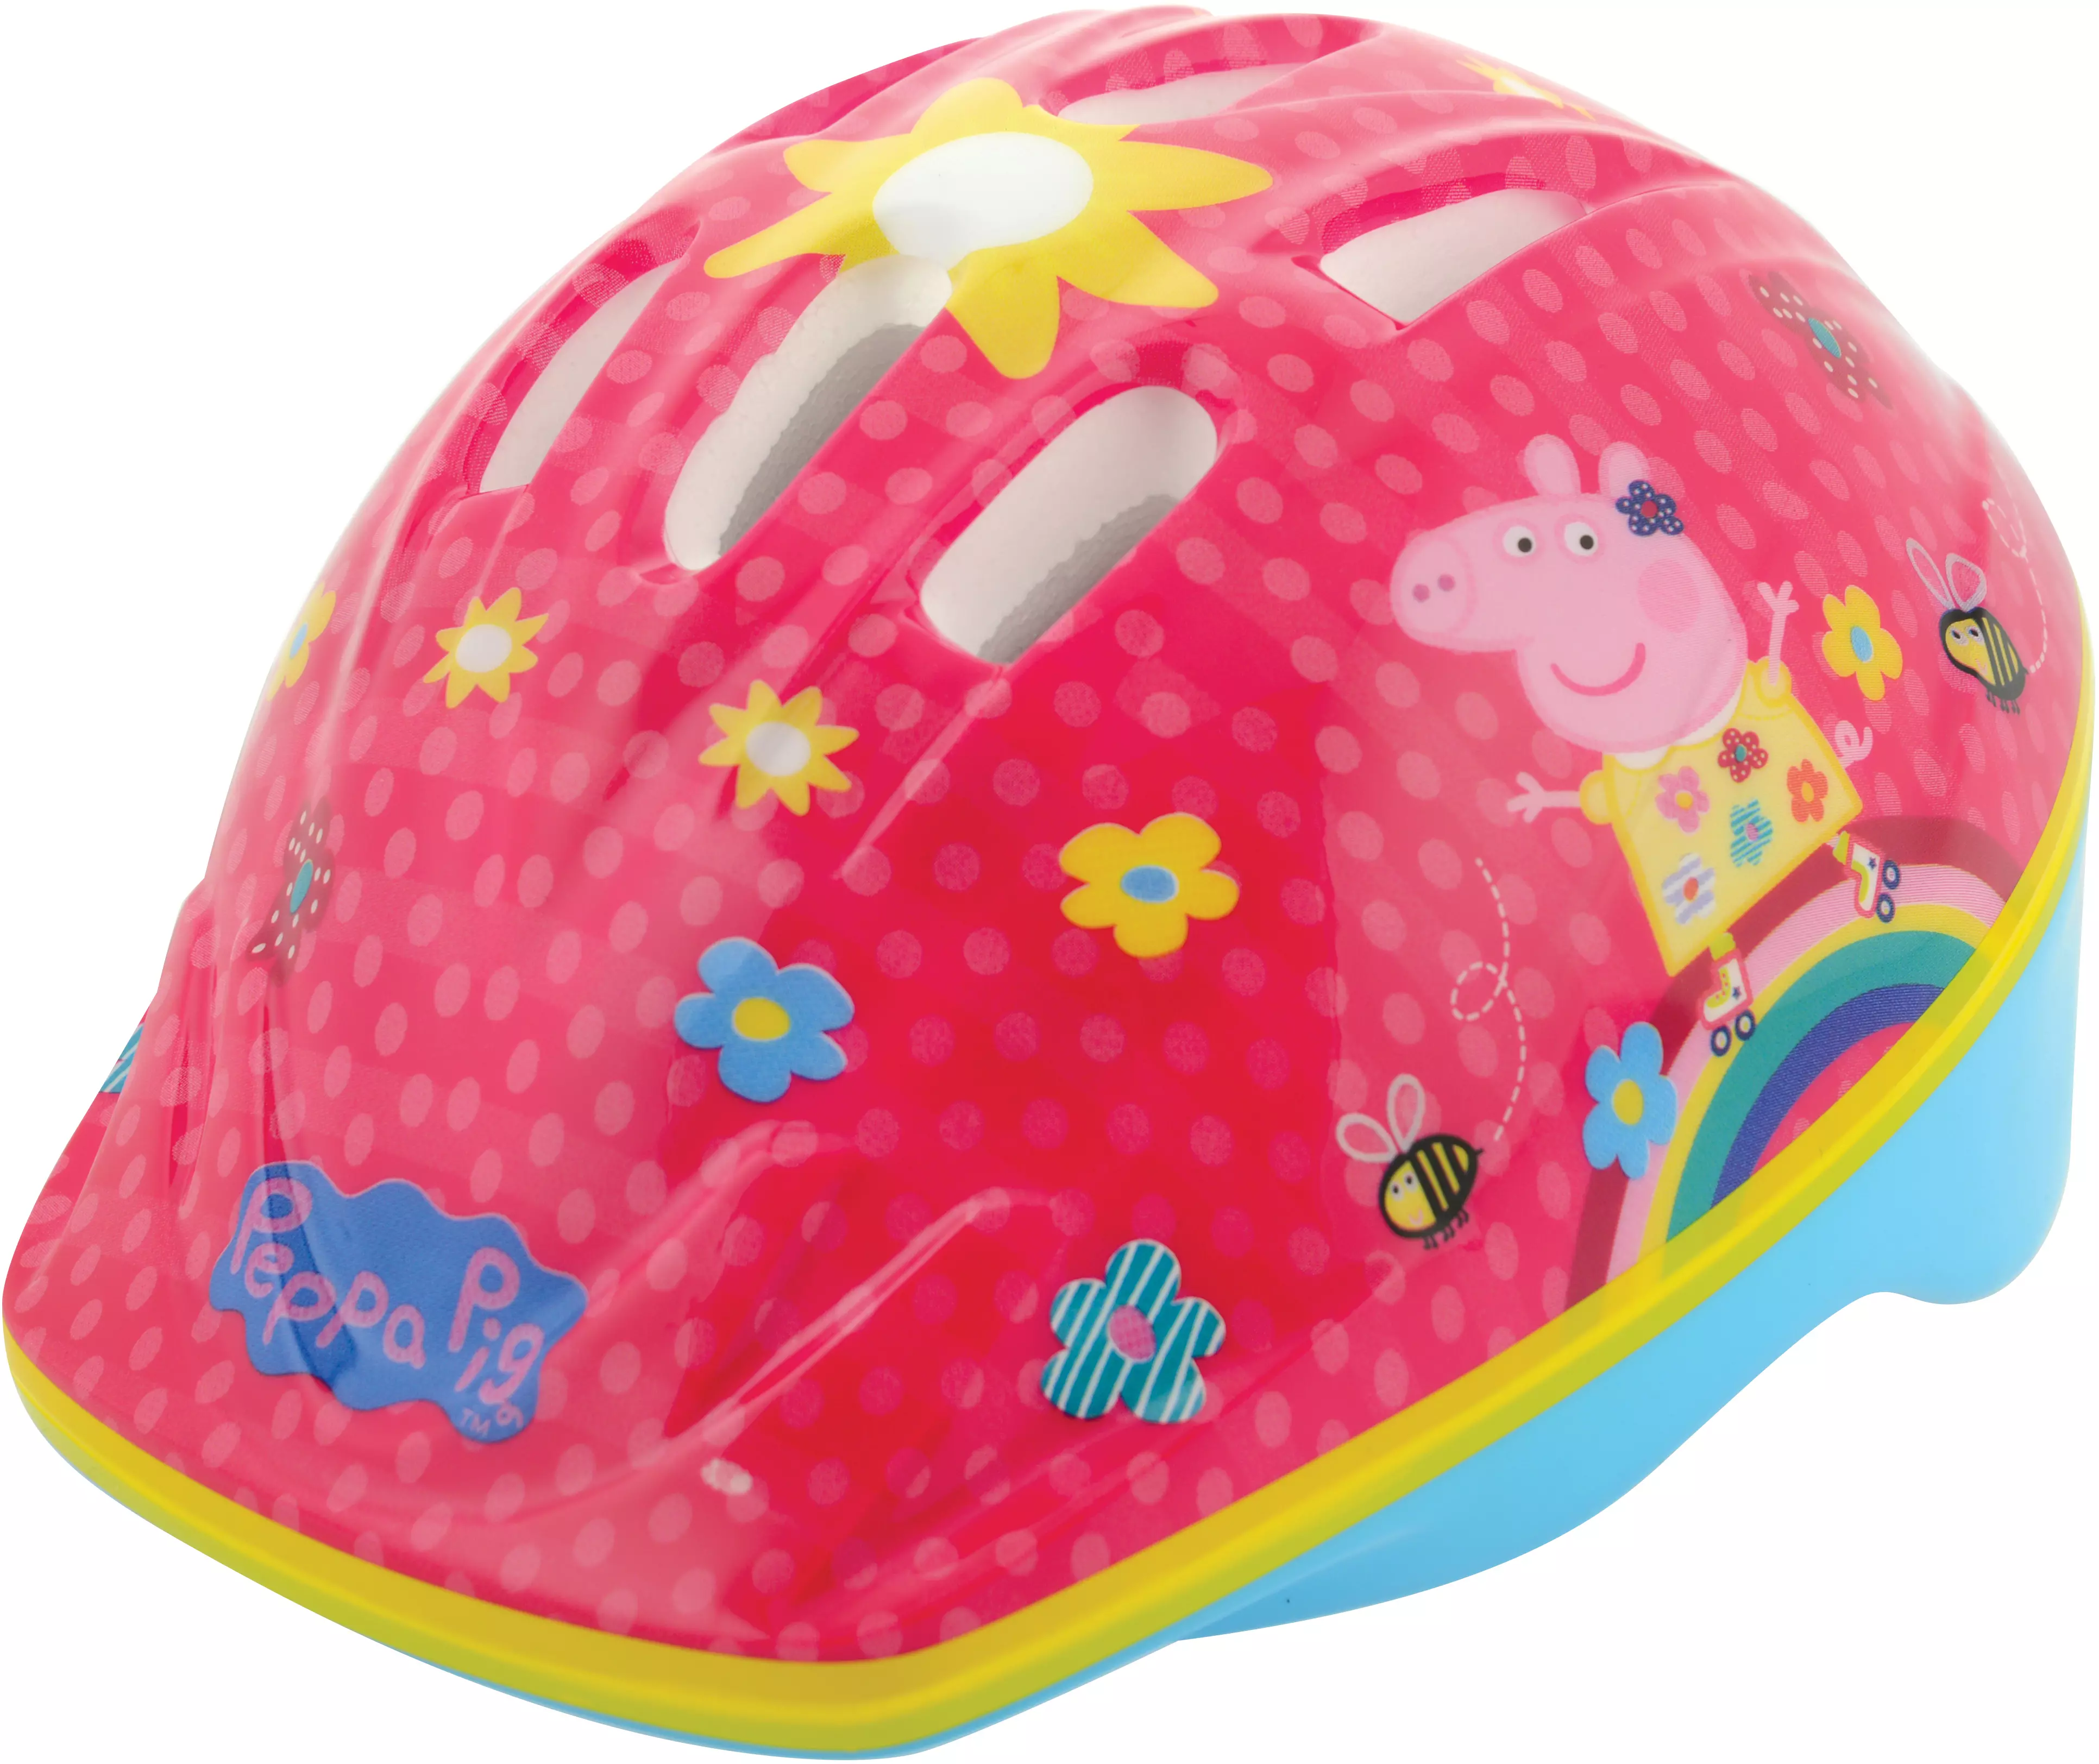 Peppa Pig Wutz Fahrradhelm Helm Sicherheitshelm Schutzhelm Kinder Kinderhelm GS 